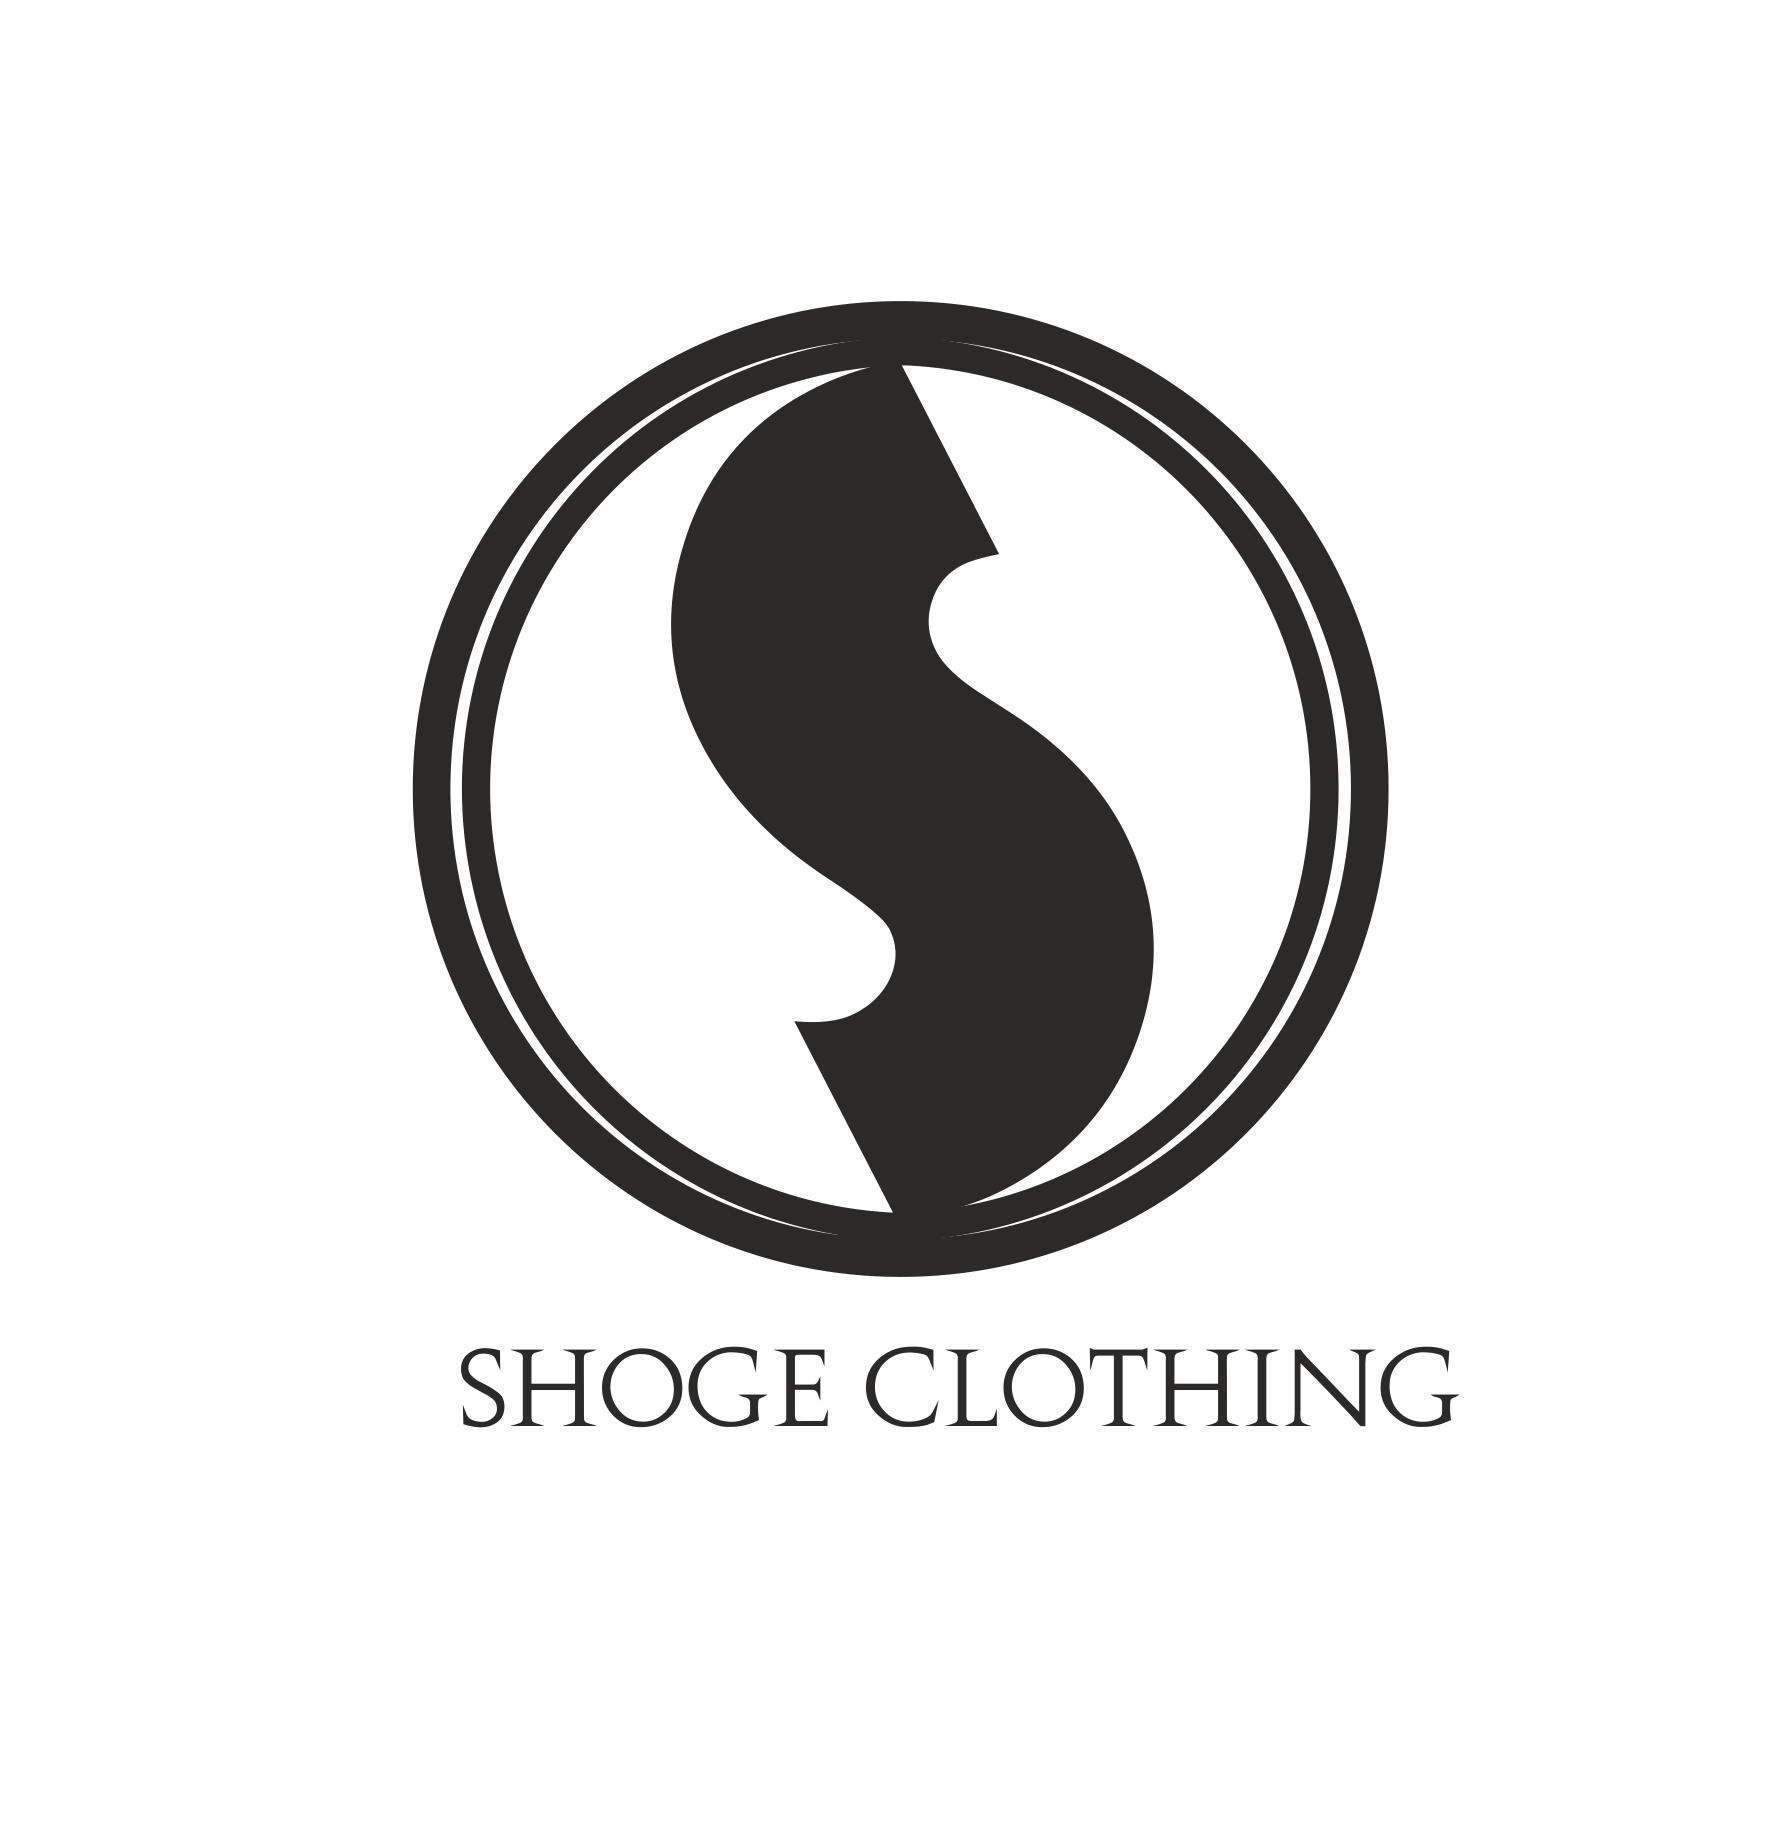 Shoge Clothing – Shoge Clothing